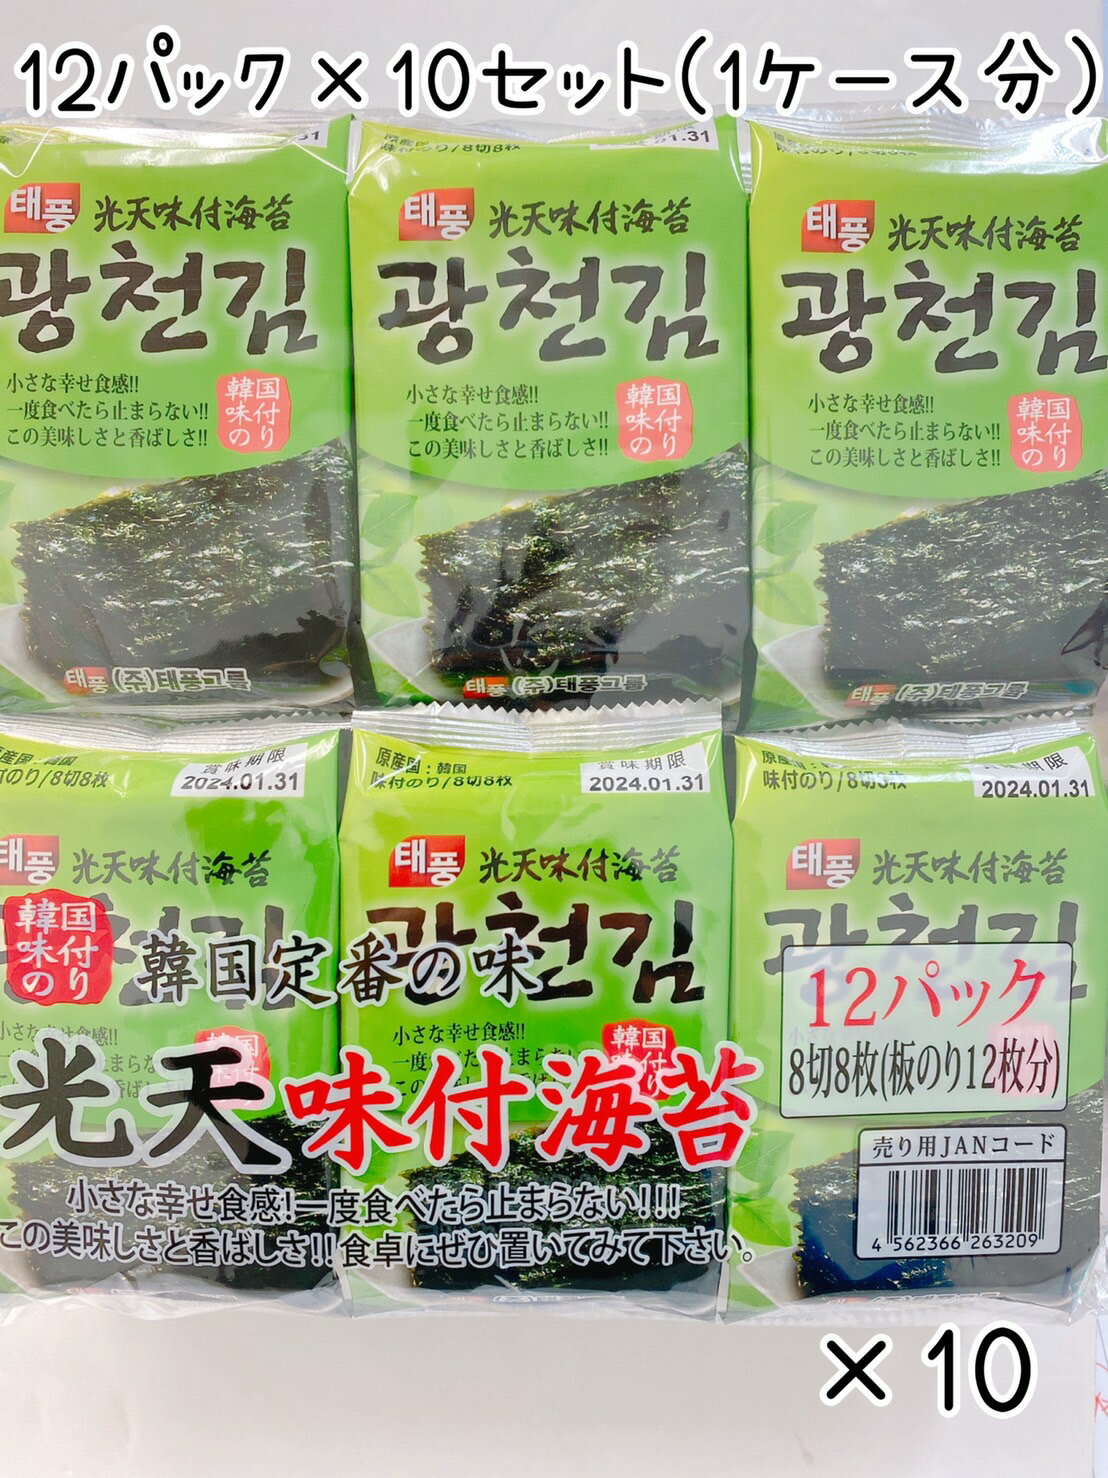 【1ケース買い】光天味付海苔 12パック入り 10セット 韓国定番 人気商品 韓国のり おかず お弁当 ご飯のお供